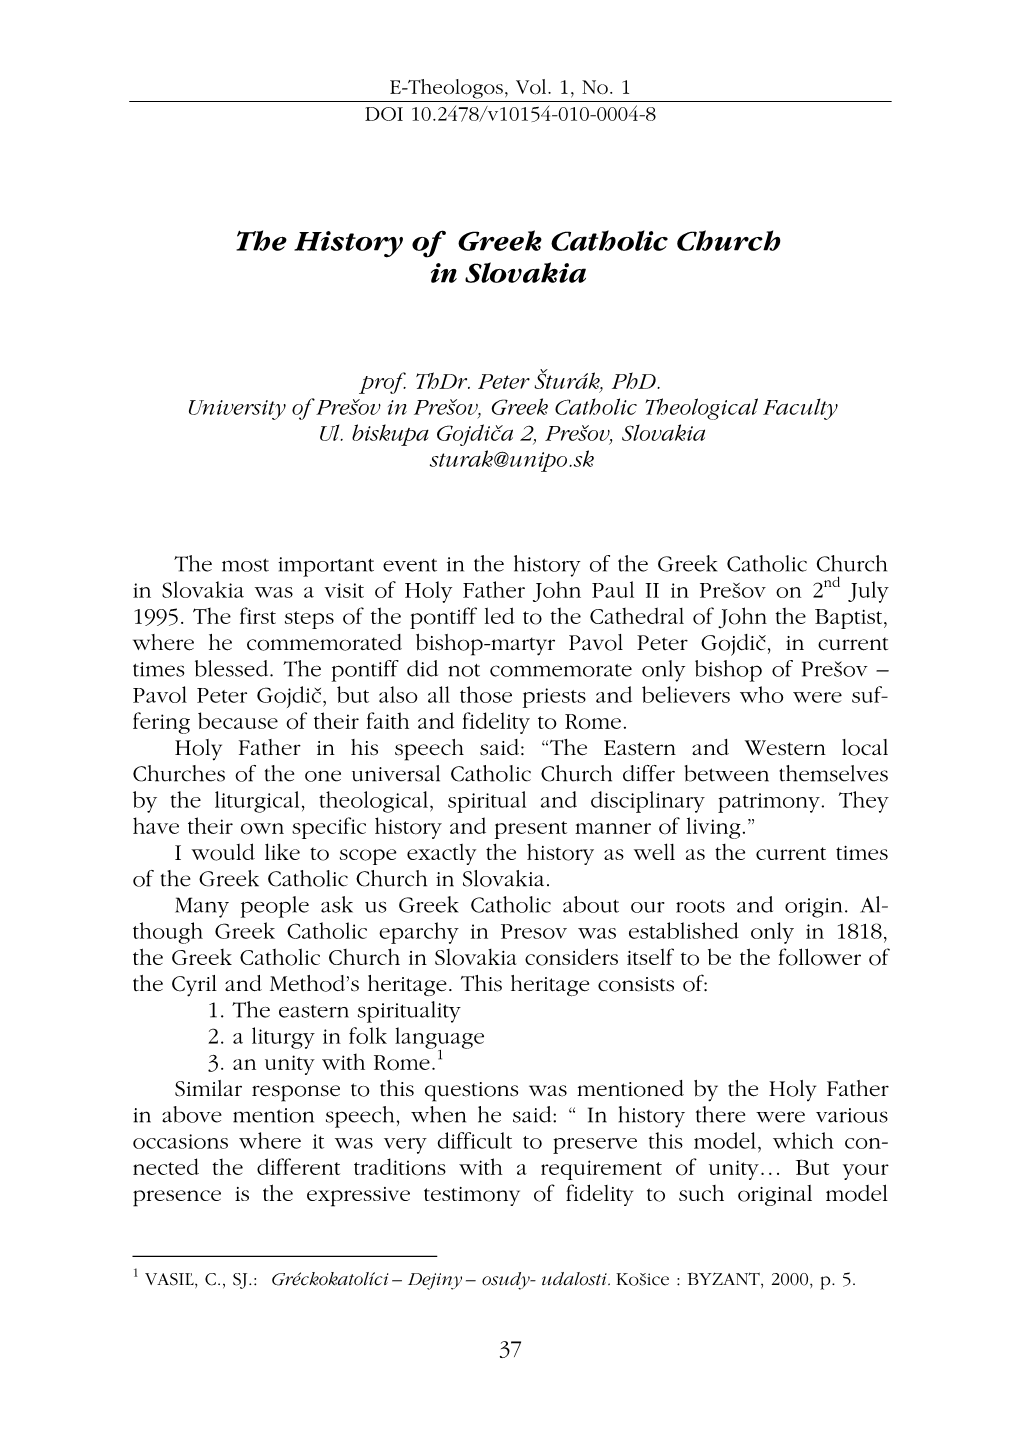 The History of Greek Catholic Church in Slovakia